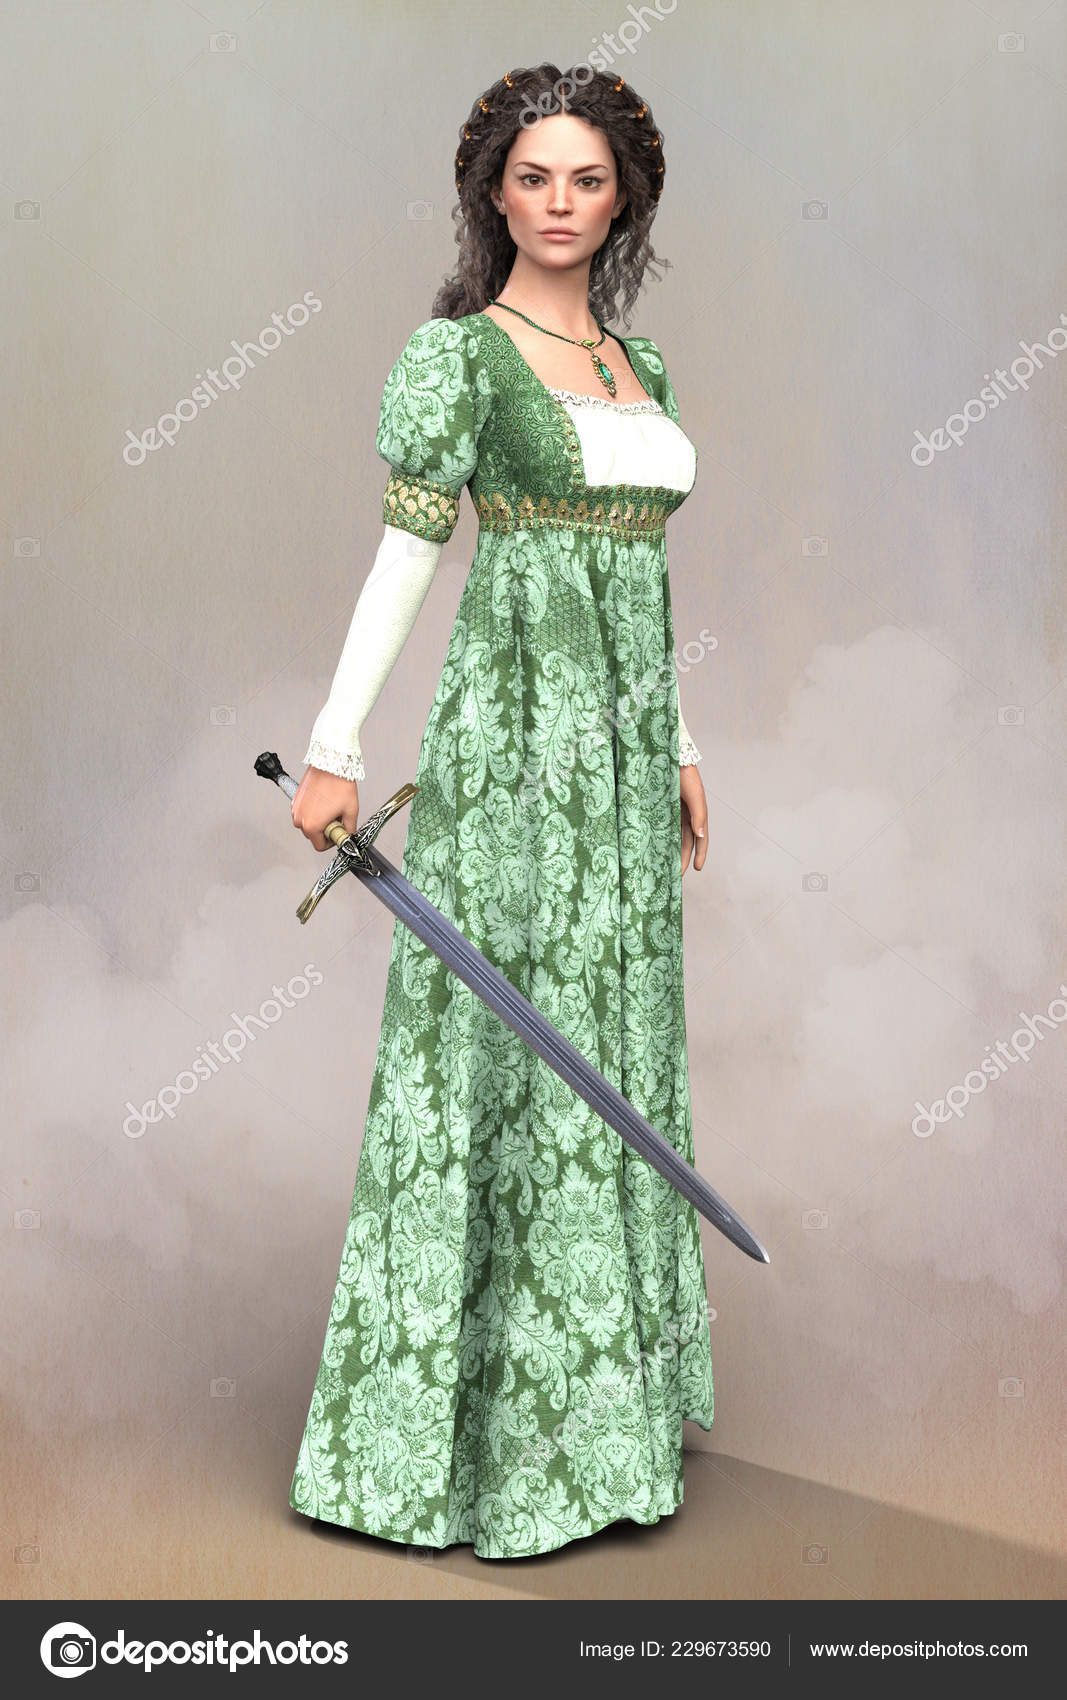 Fantasy Book cover Design - Renaissance Woman